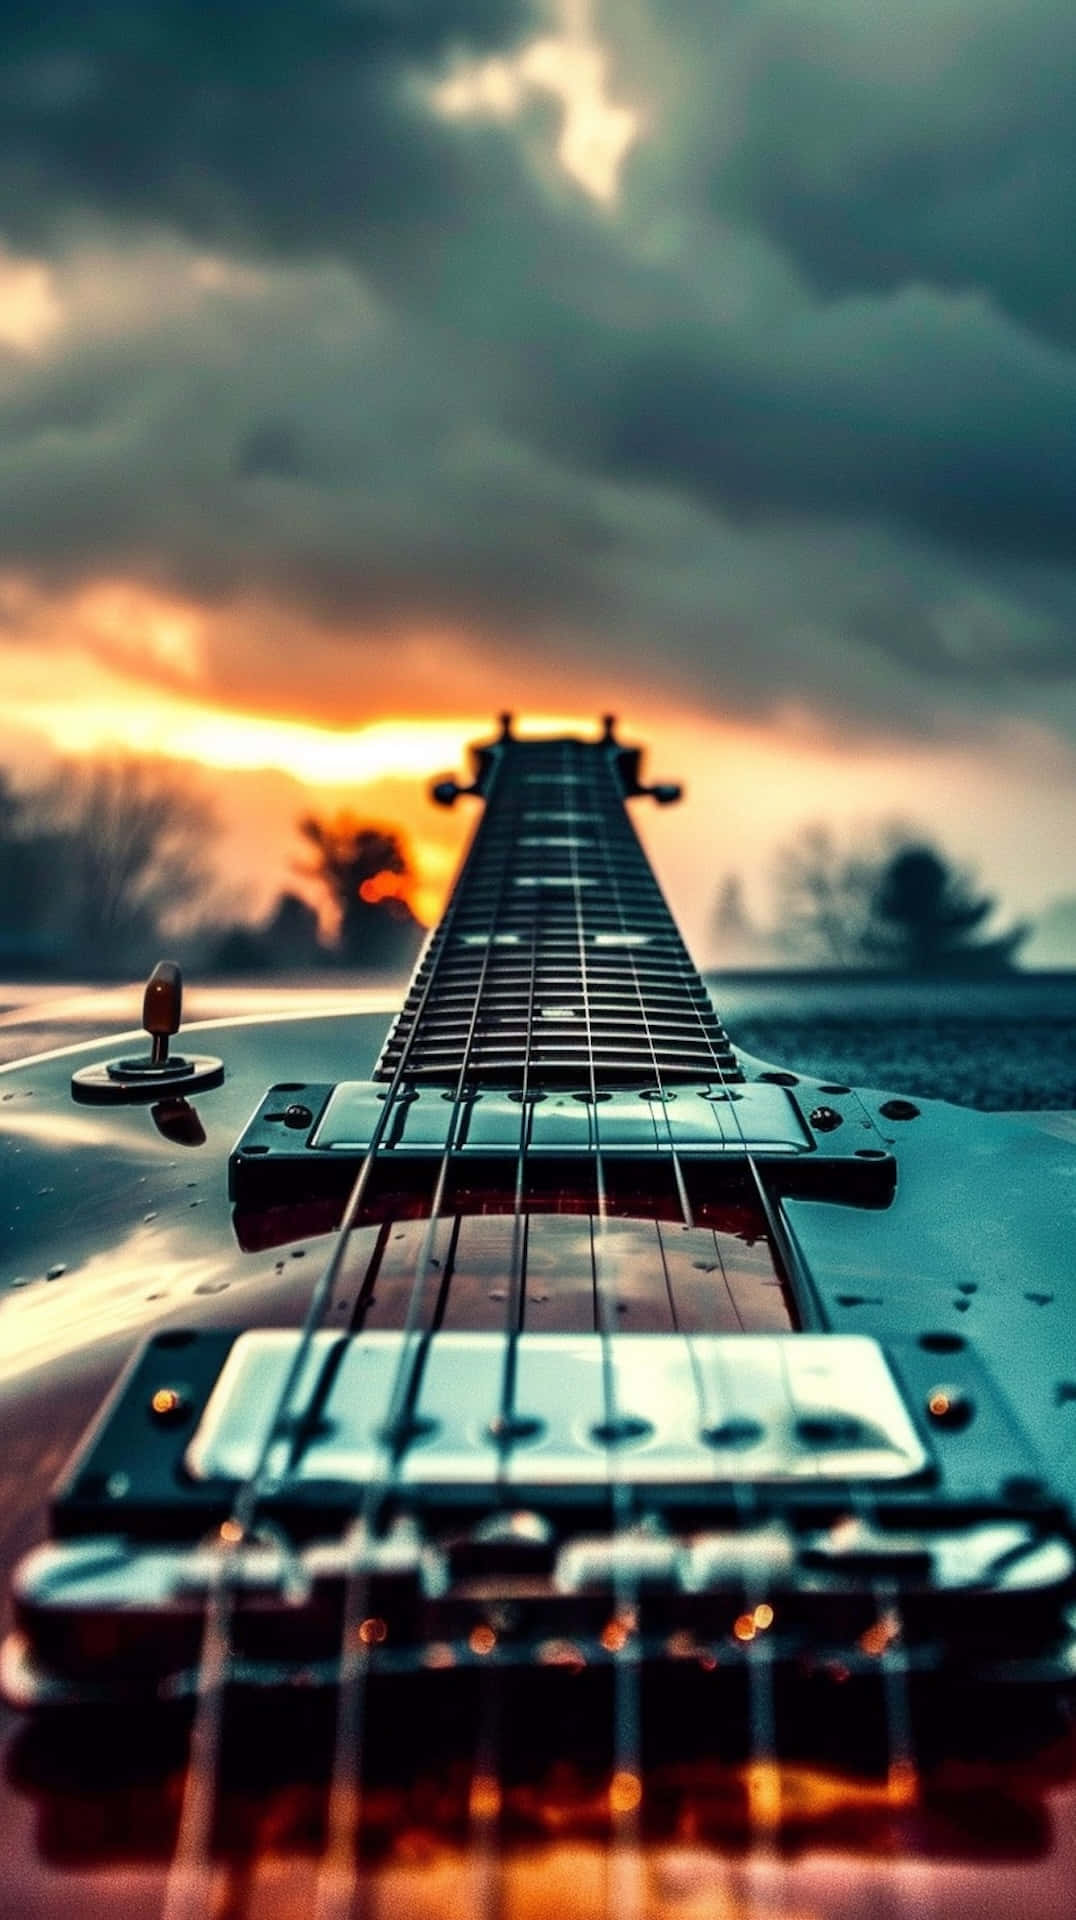 Sunset Guitar Frets H D